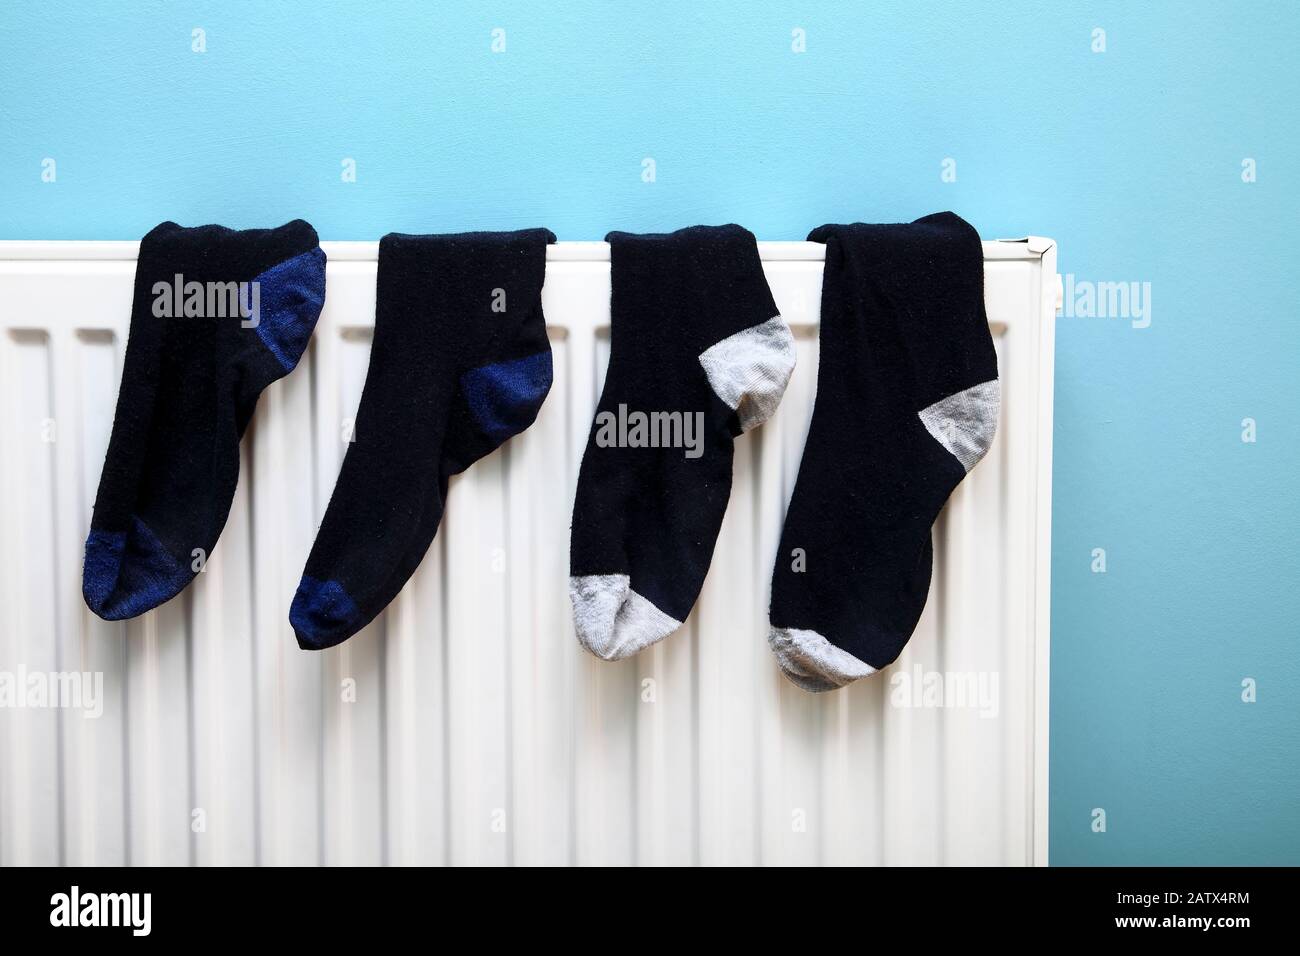 Calze che si asciugano su un radiatore in una giornata piovosa Foto Stock